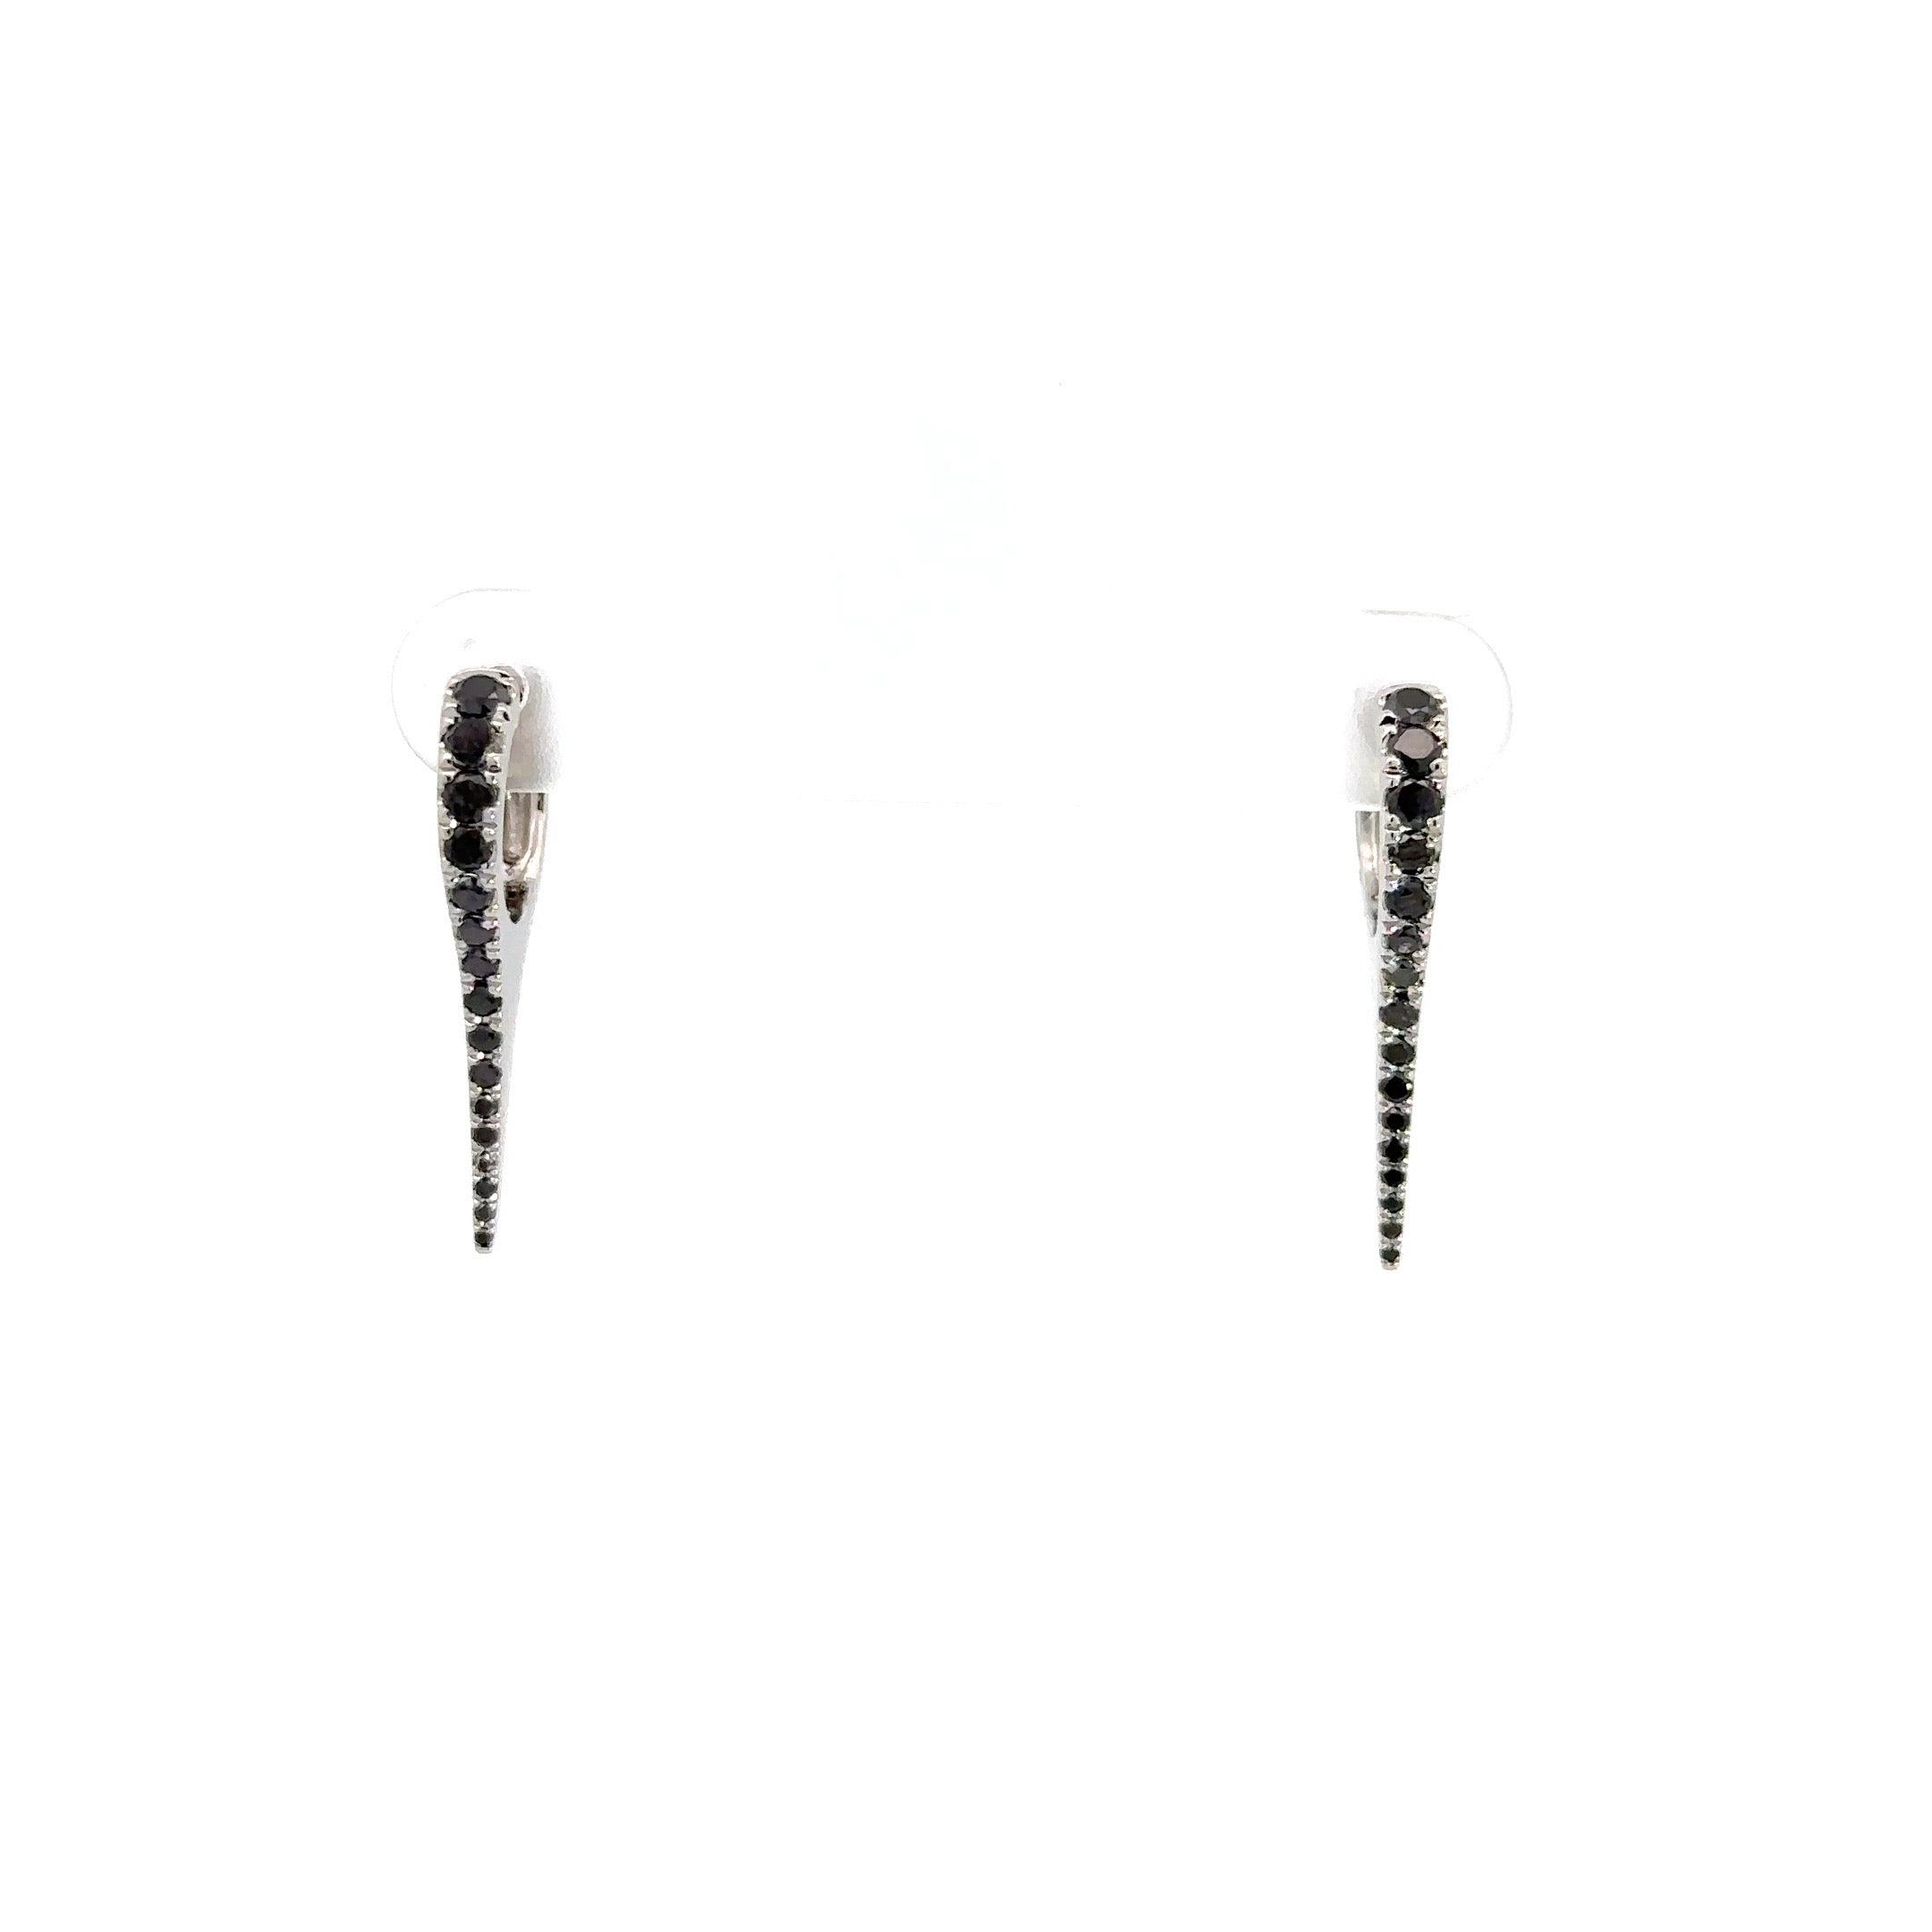 WD1195 14kt Single Row Black Diamond Needle Spike Earrings